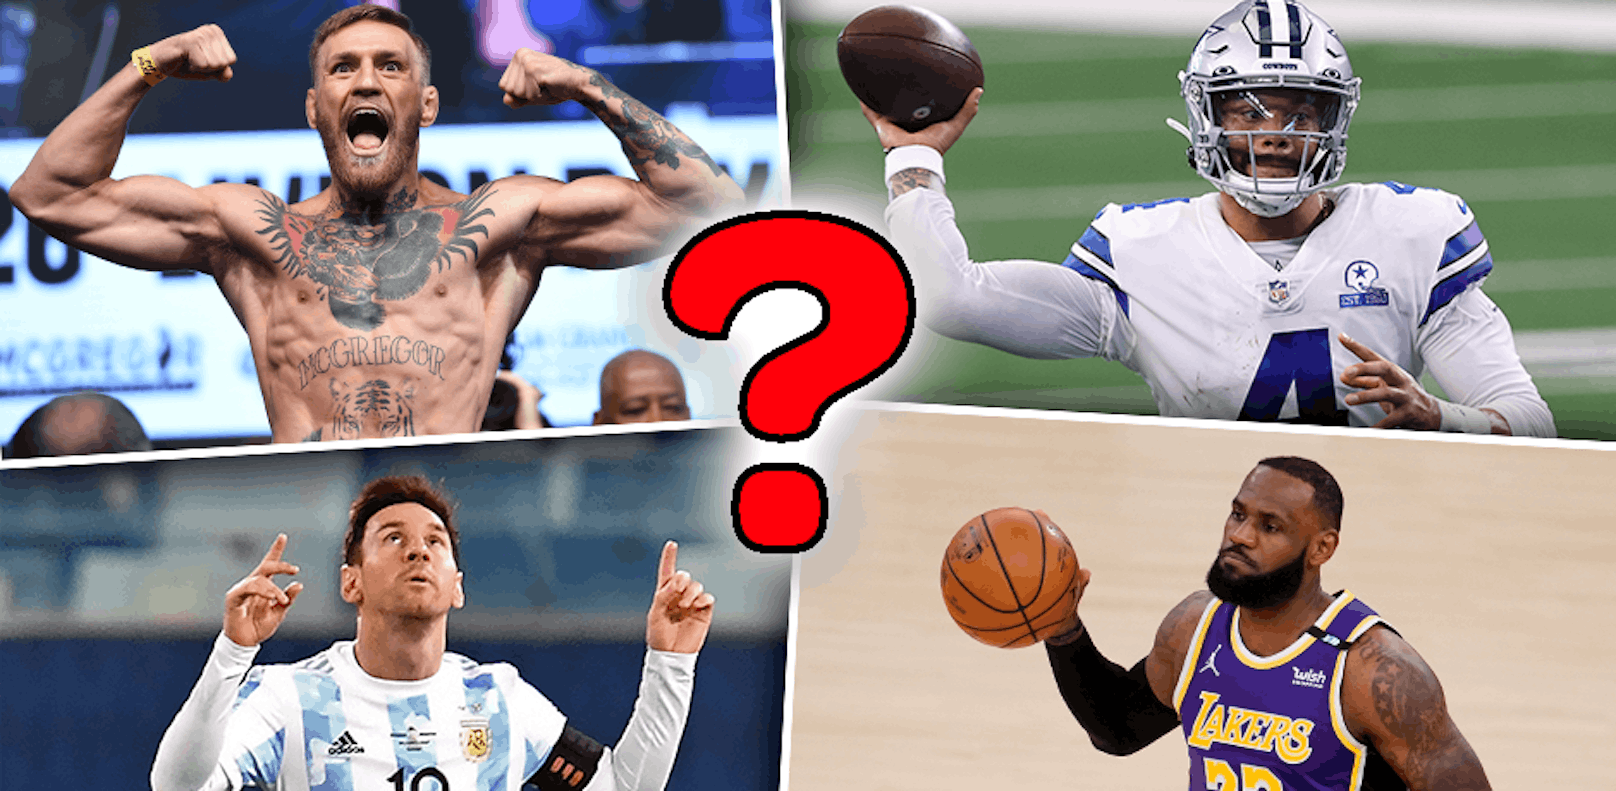 Wer ist der reichste Sportler aller Zeiten?